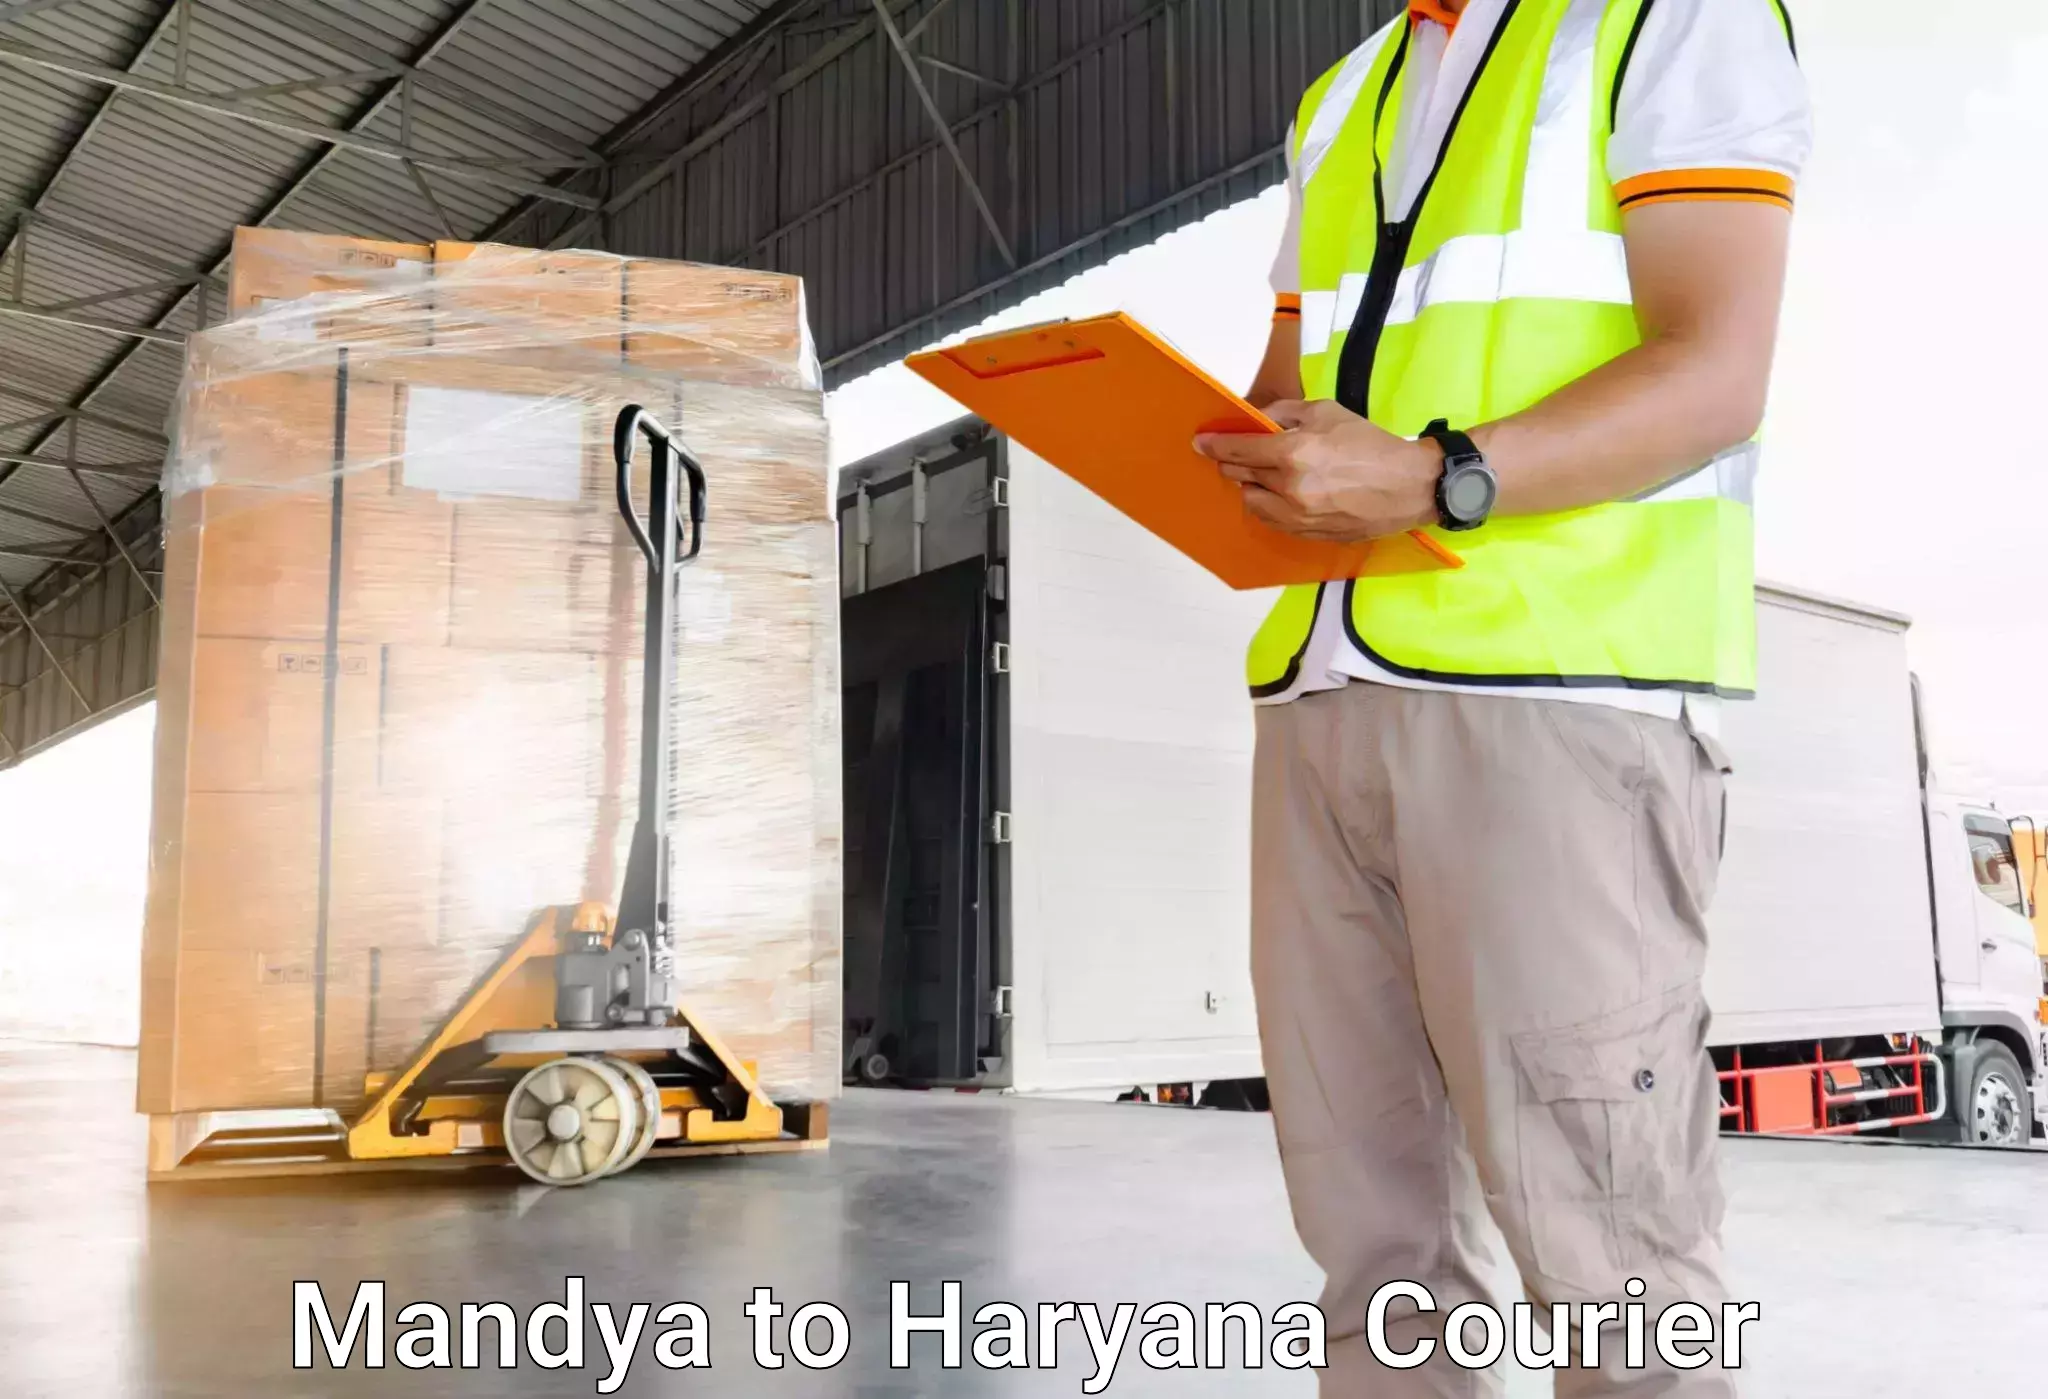 Luggage transport company Mandya to Panchkula